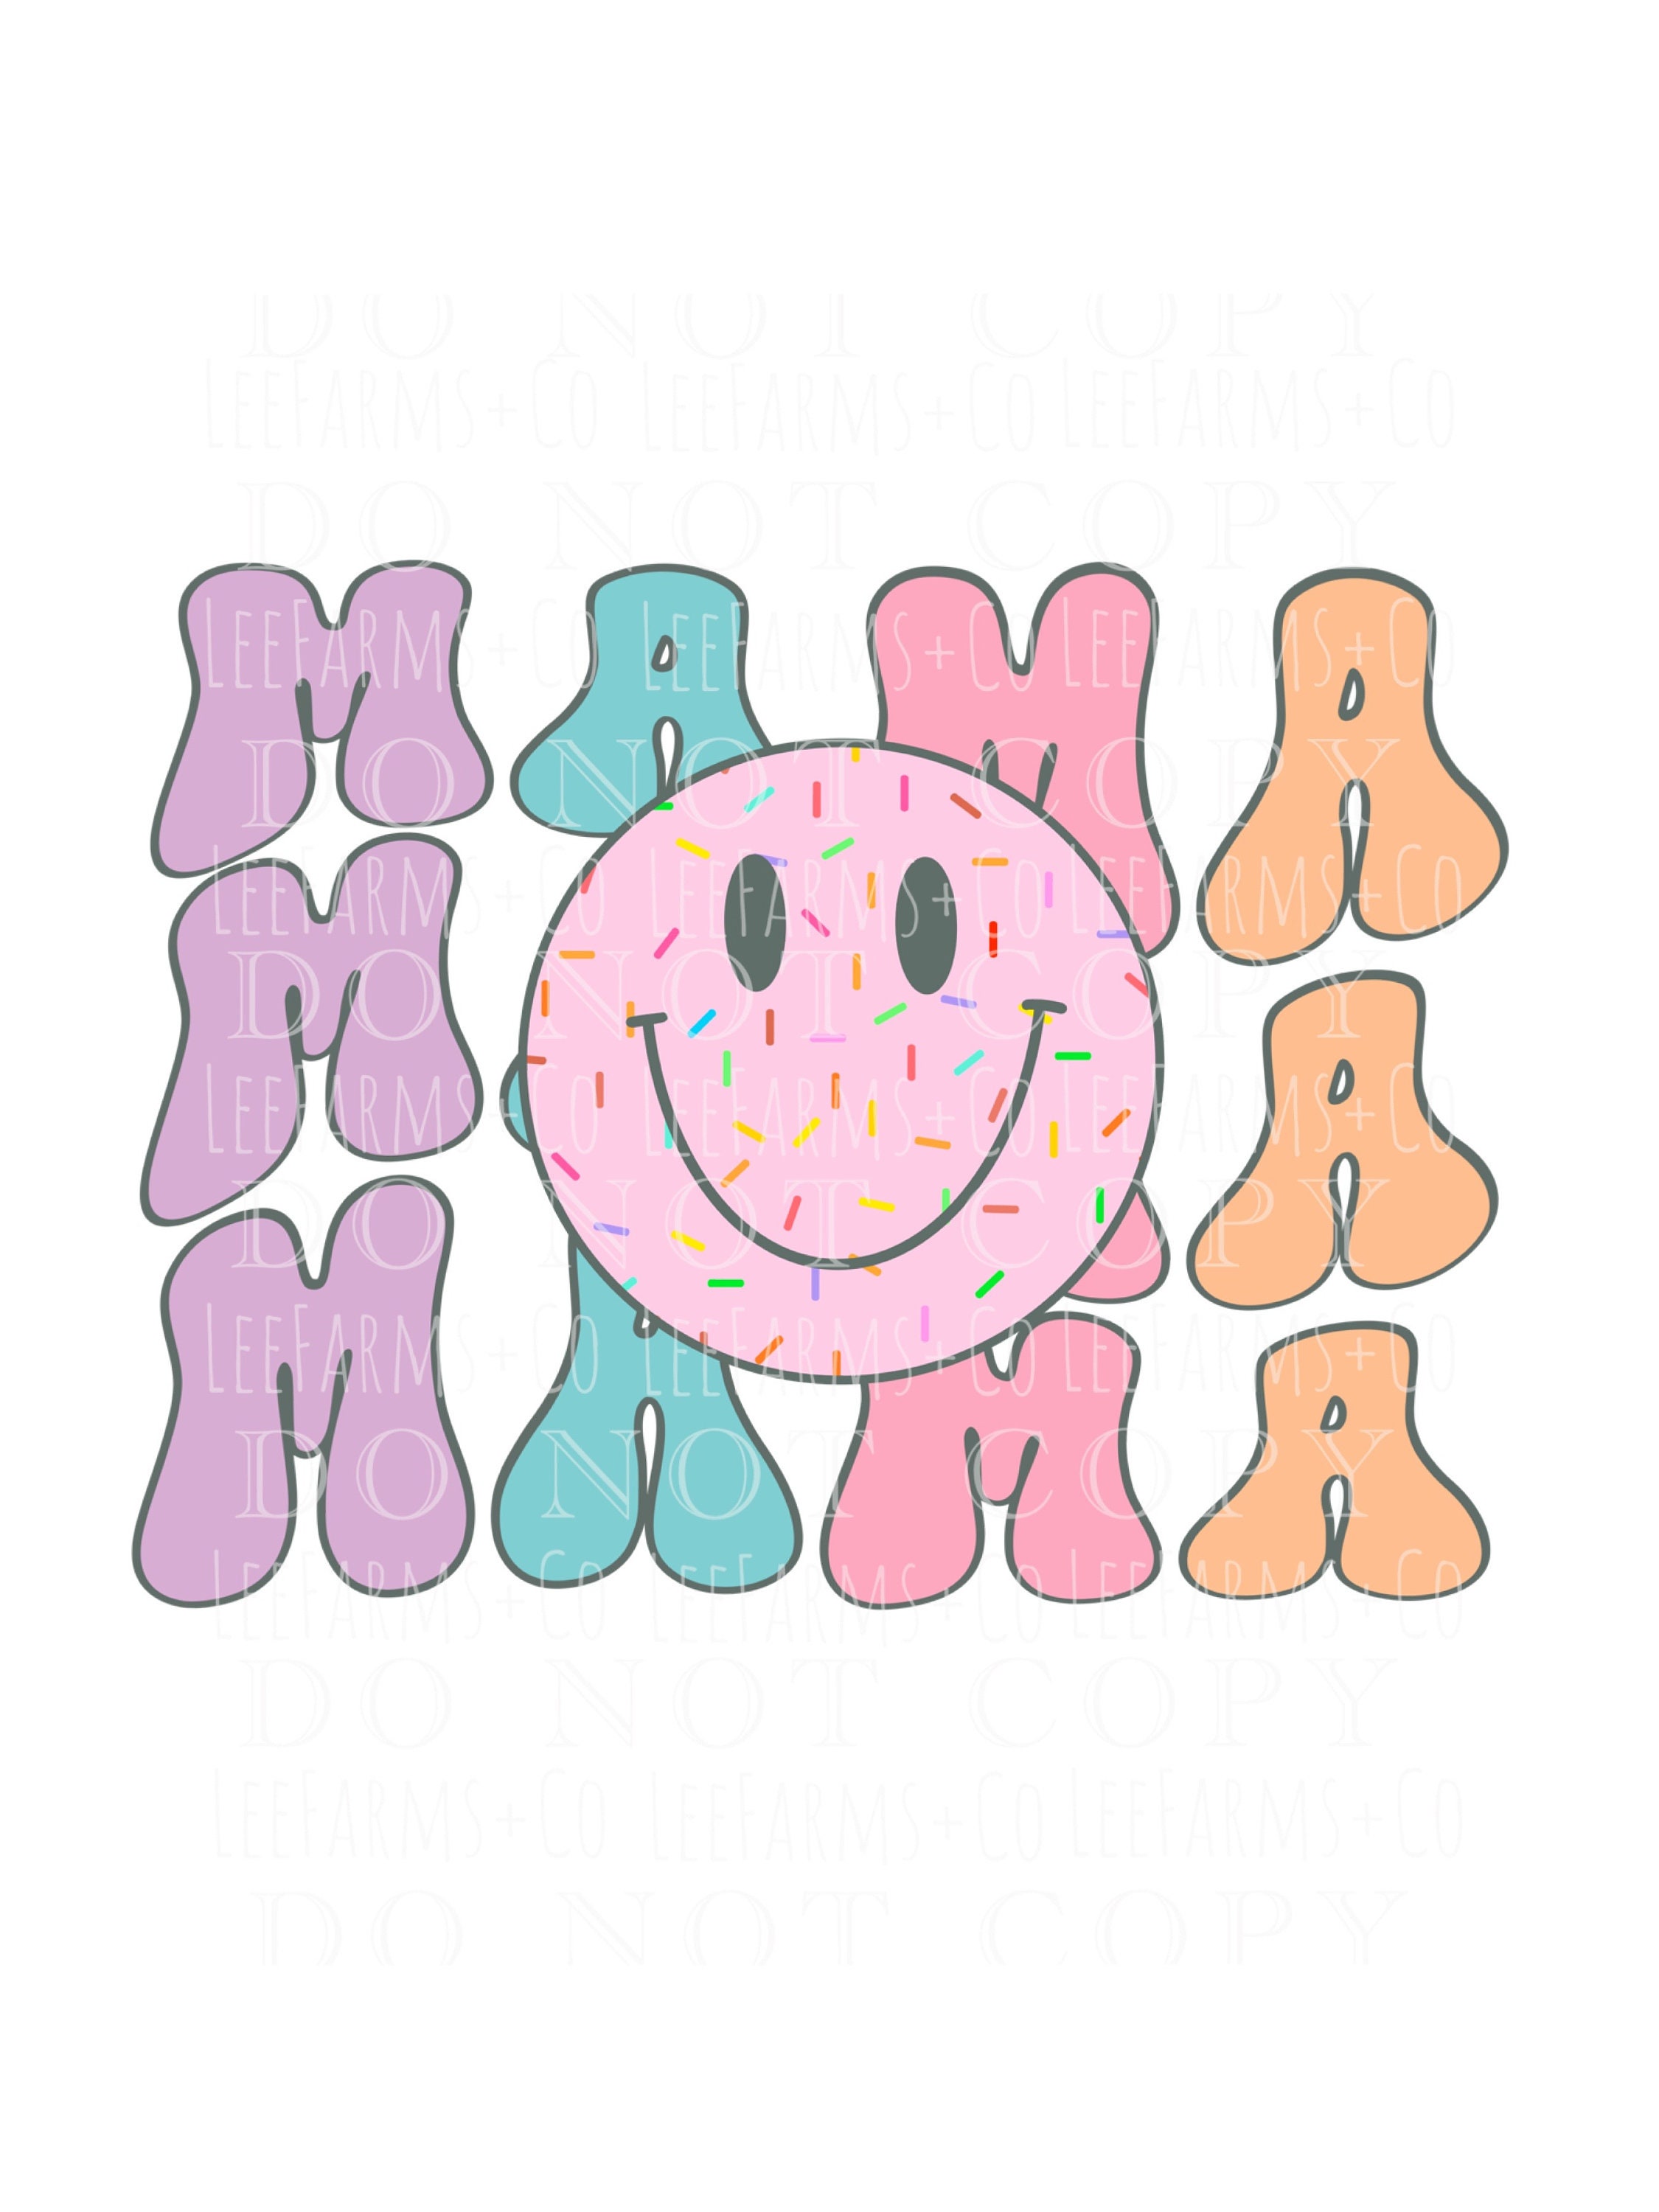 Retro Mama Smiley Face Tumbler – Enchanted Mania